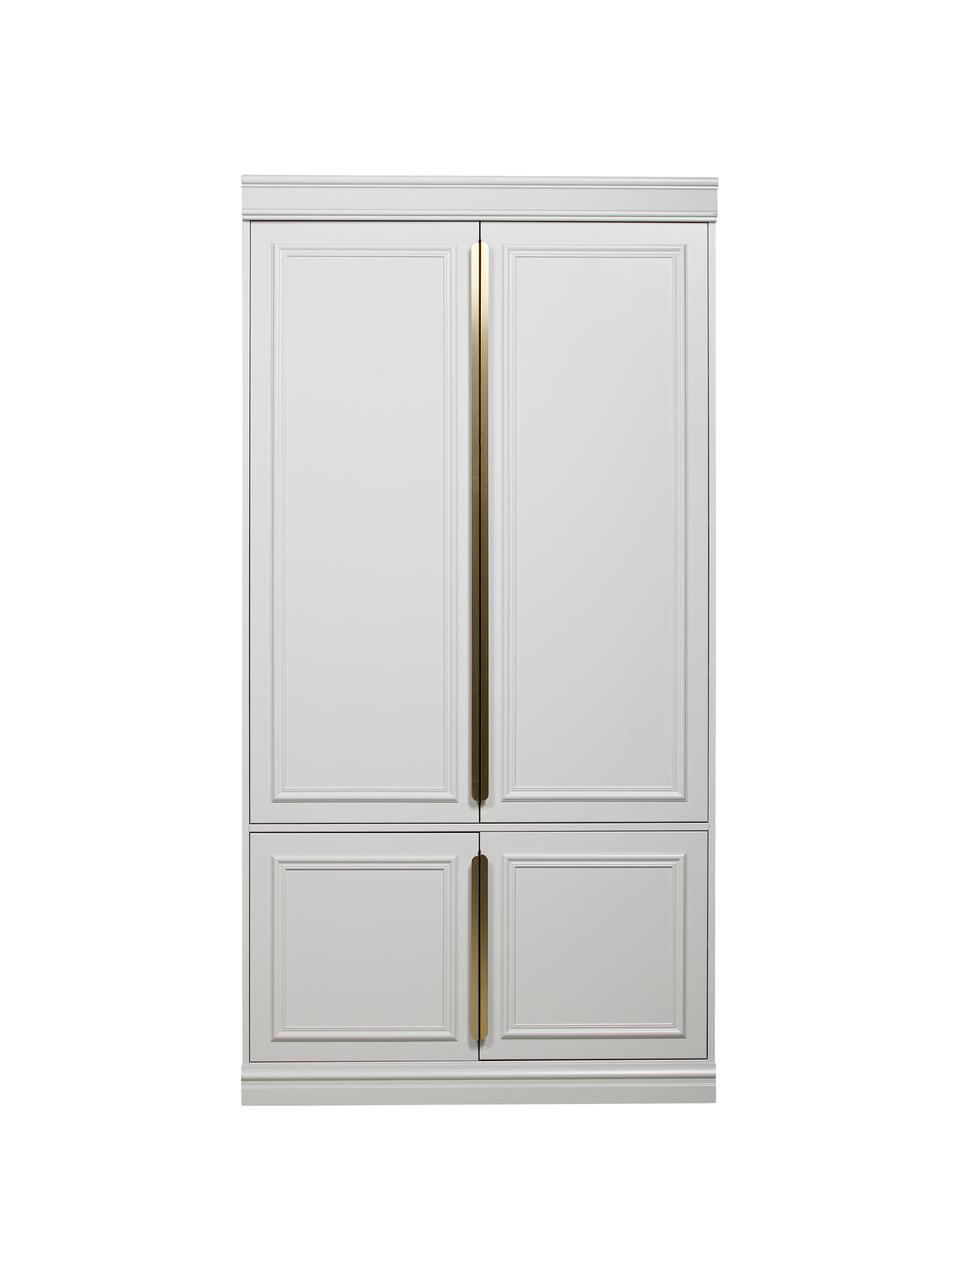 Draaideurkast Organize in grijswit met planken, 2 deuren, Frame: grenenhout, gelakt, Handvatten: gecoat metaal, Grijs, wit, B 110 x H 215 cm